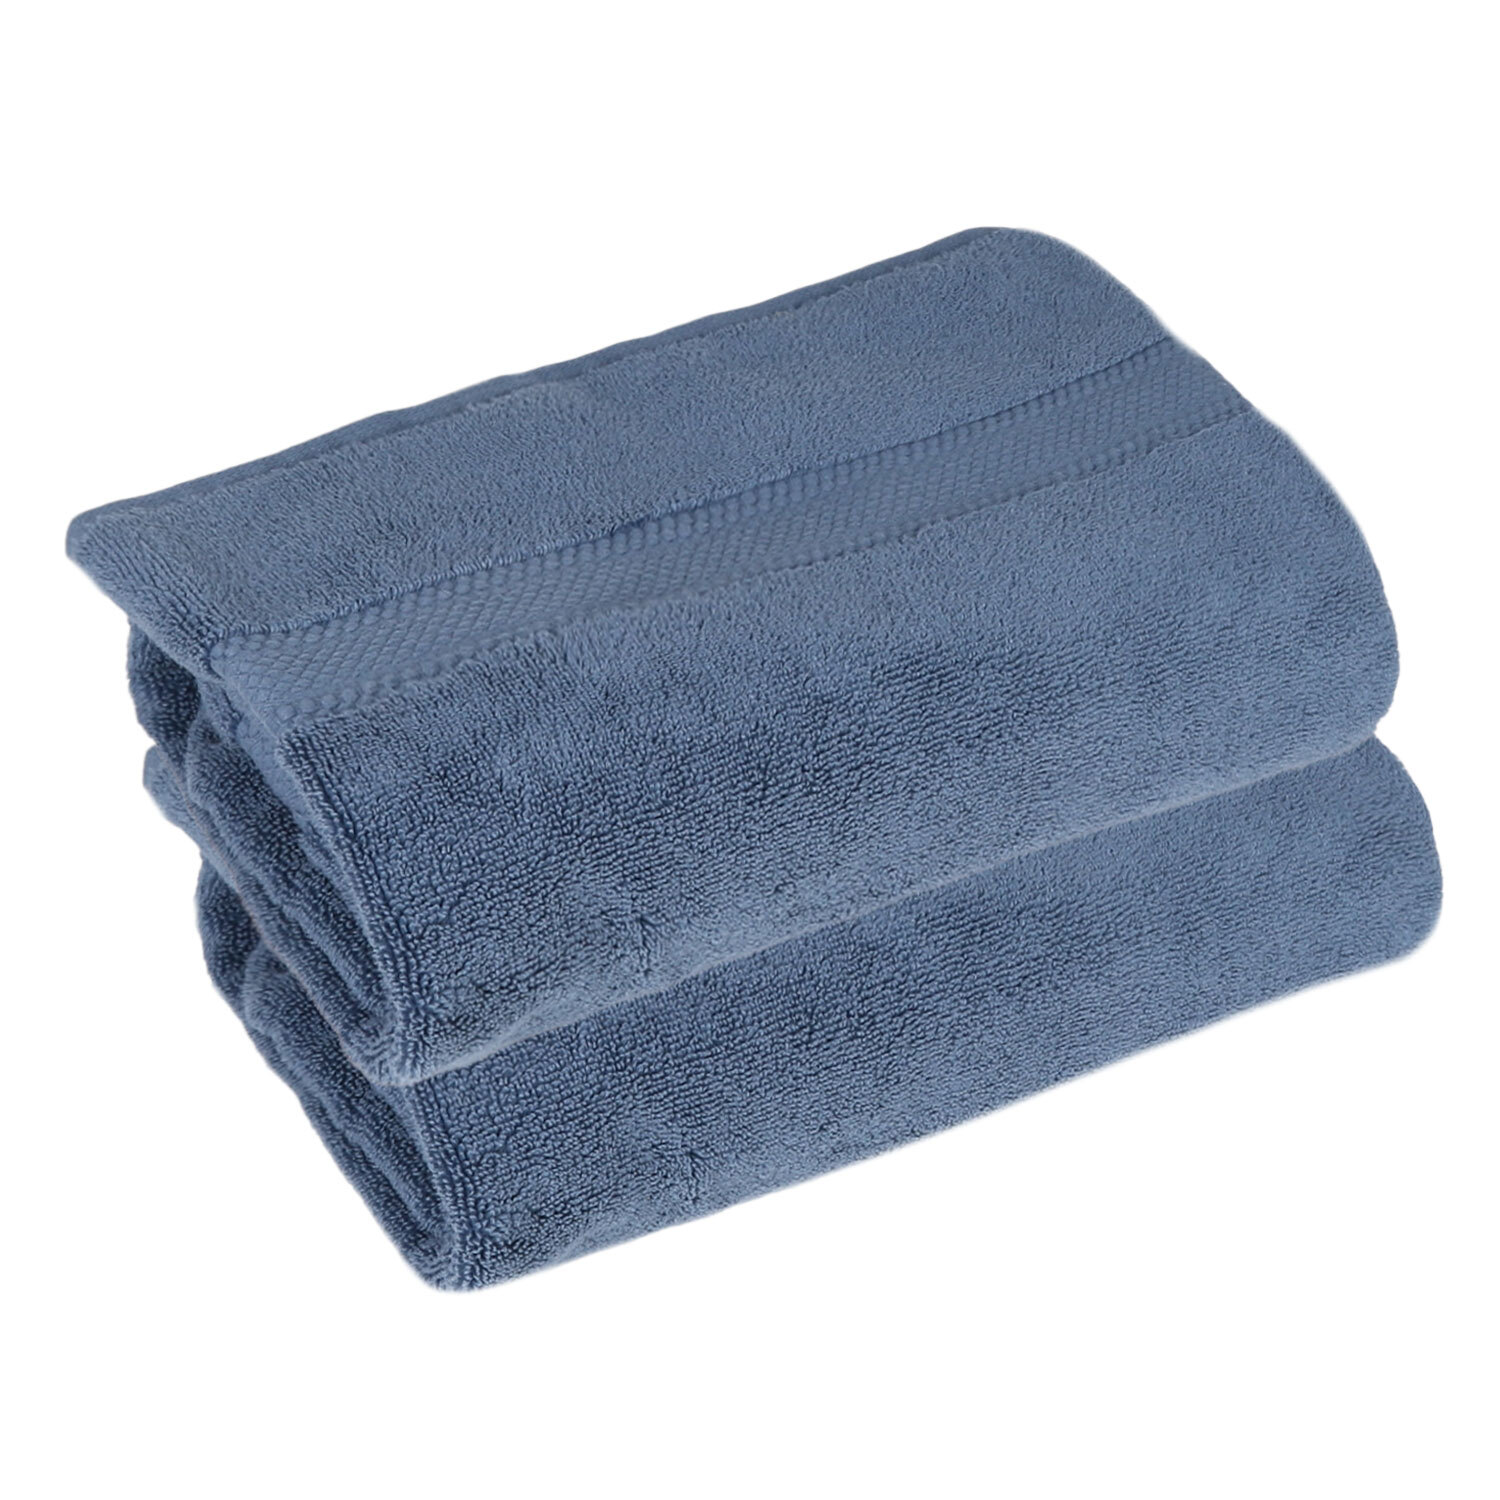 Deluxe Hand Towel - Denim Image 2